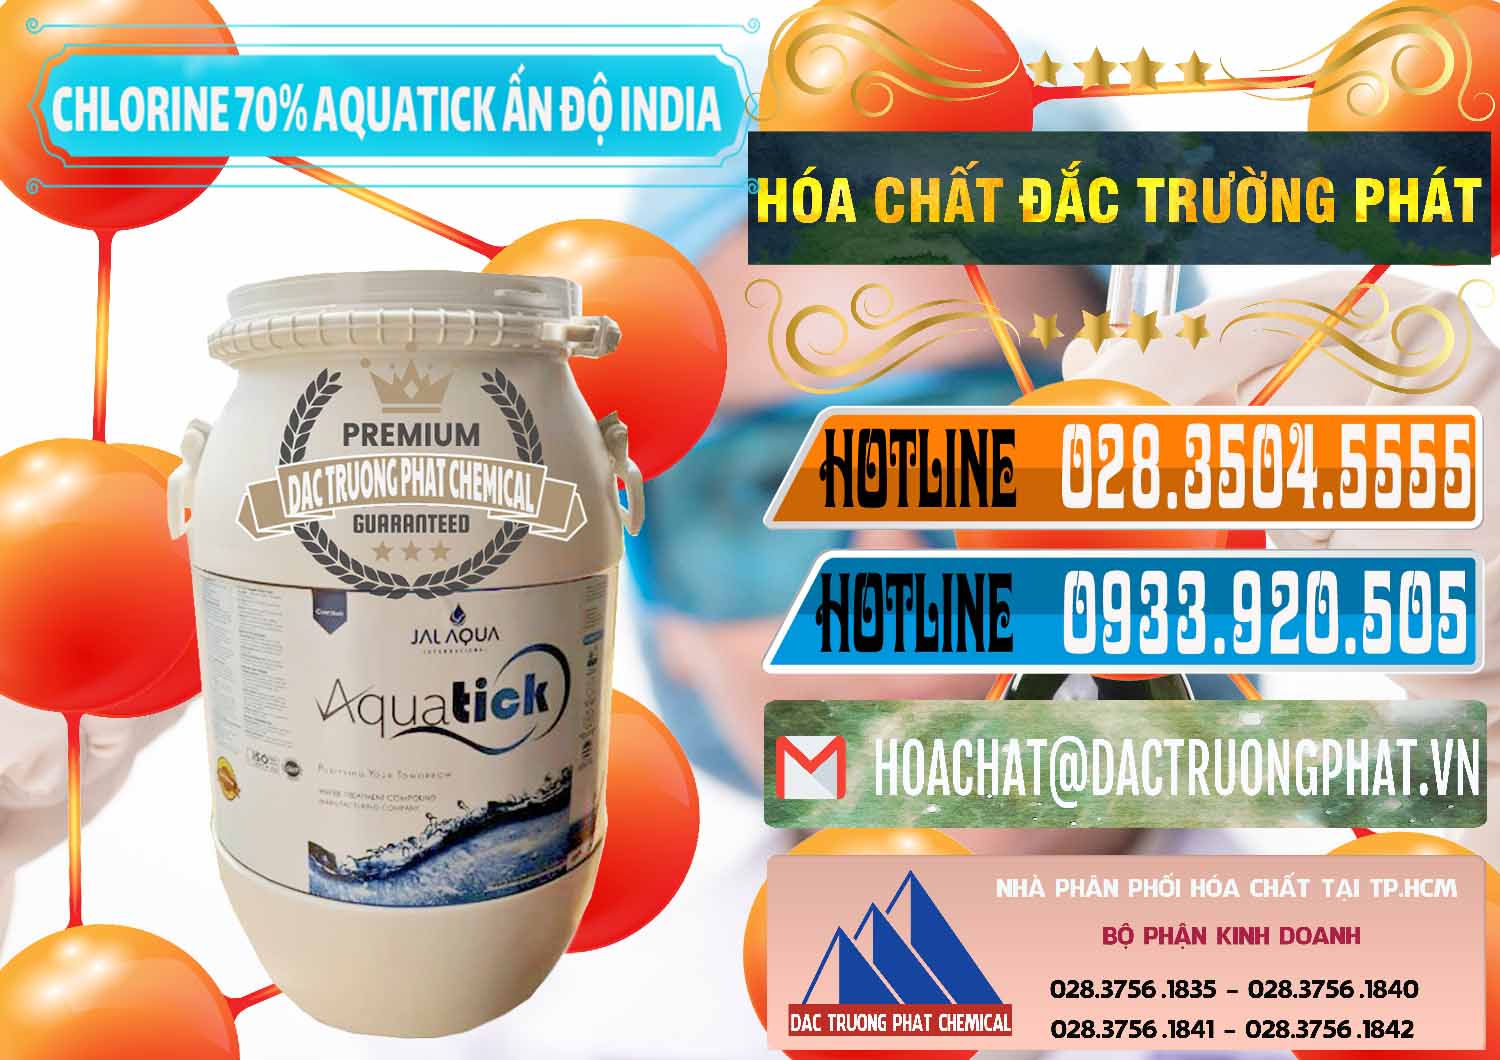 Nơi bán & phân phối Chlorine – Clorin 70% Aquatick Jal Aqua Ấn Độ India - 0215 - Nơi phân phối và cung ứng hóa chất tại TP.HCM - stmp.net